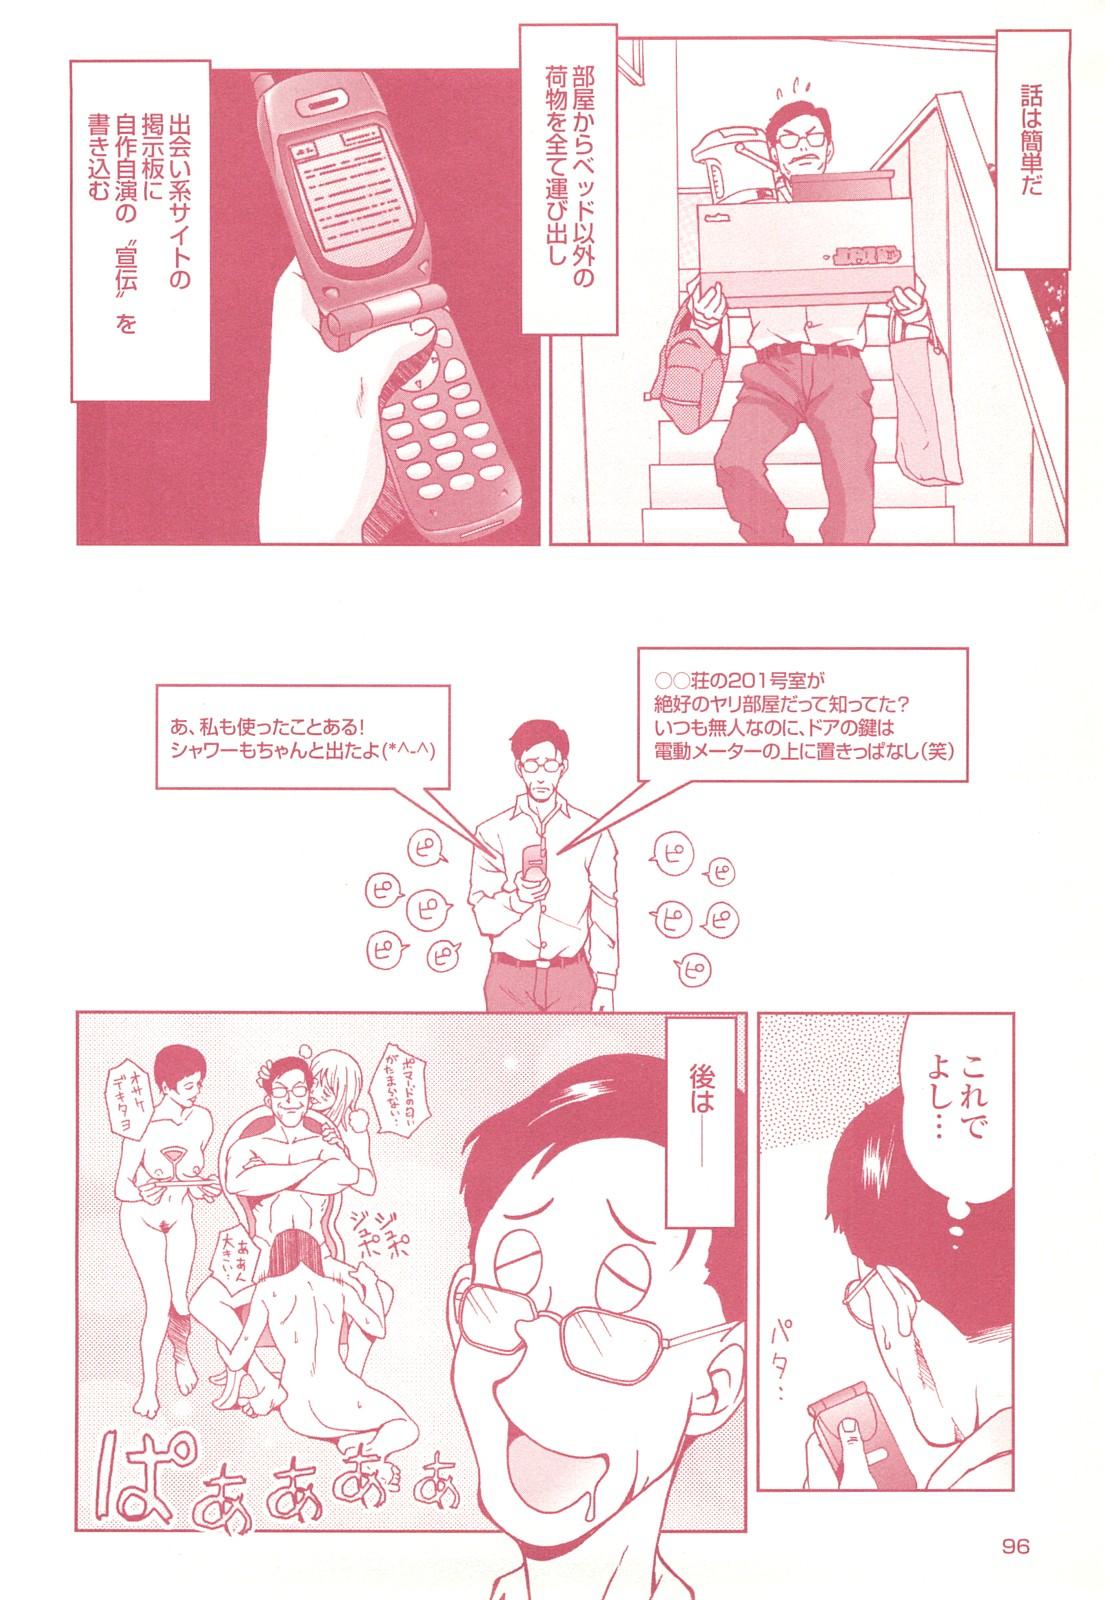 コミック裏モノJAPAN Vol.18 今井のりたつスペシャル号 95